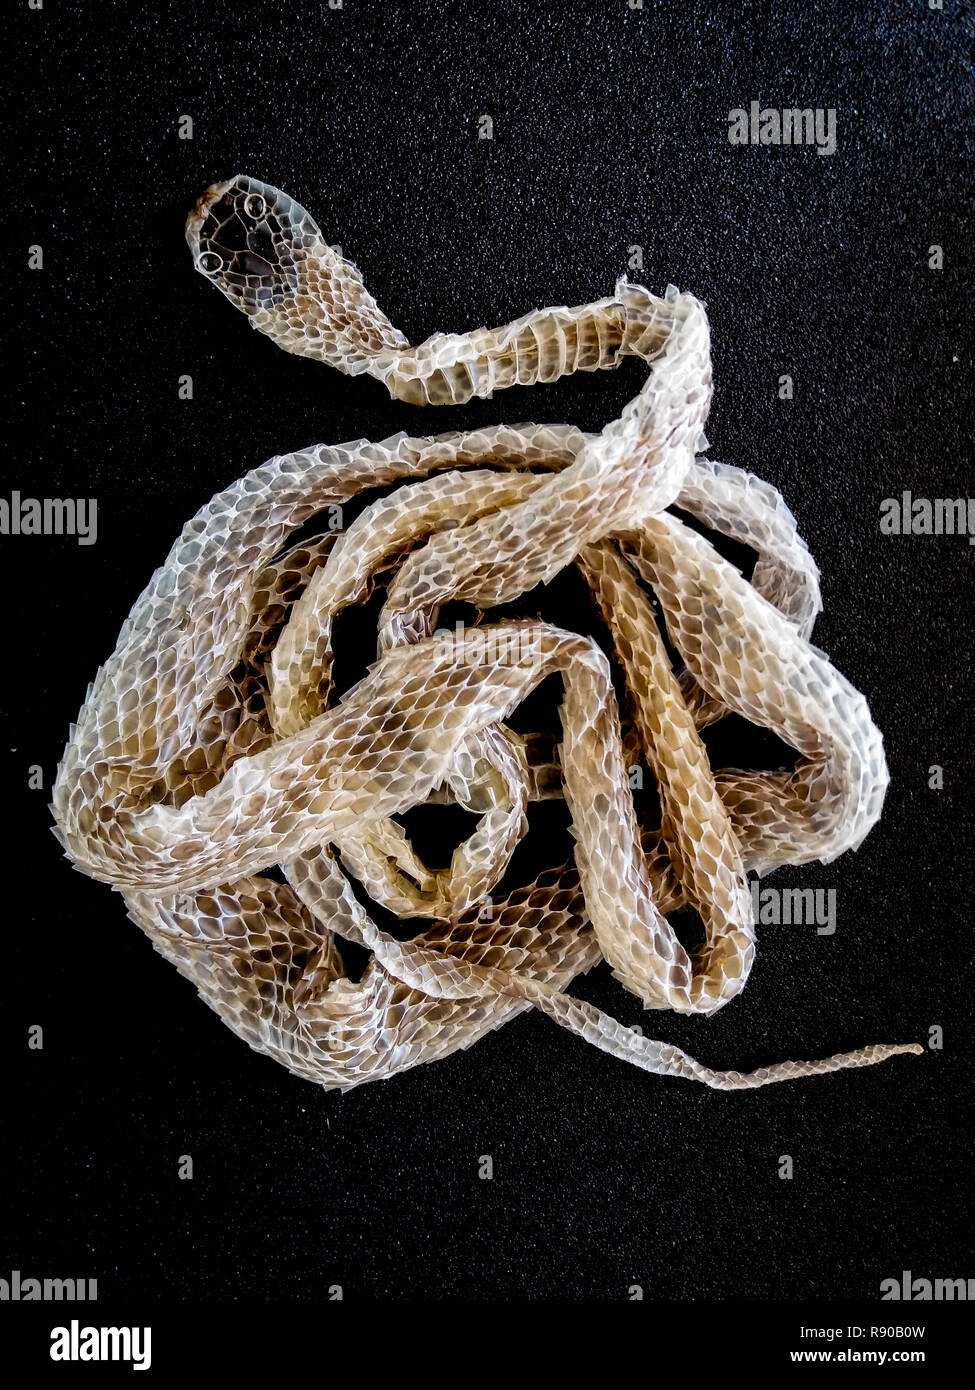 La piel (cambio de piel, ecdise) de un género Chironius serpiente Brasileña, no especies venenosas. Foto de stock